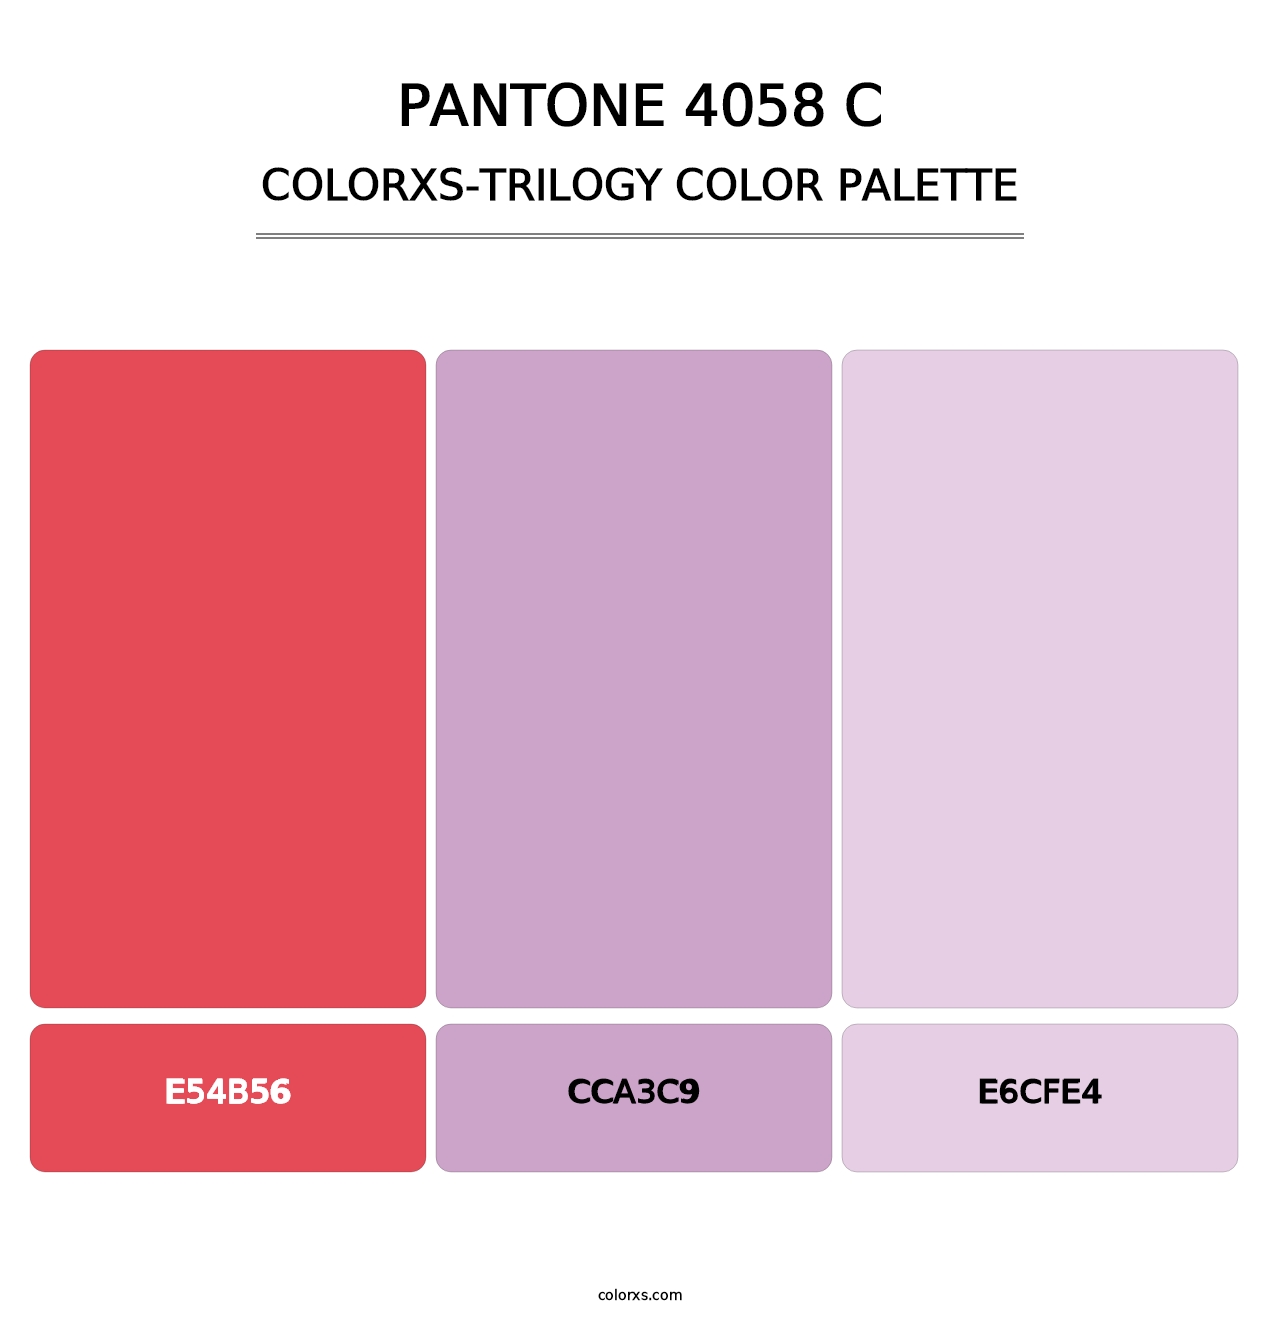 PANTONE 4058 C - Colorxs Trilogy Palette